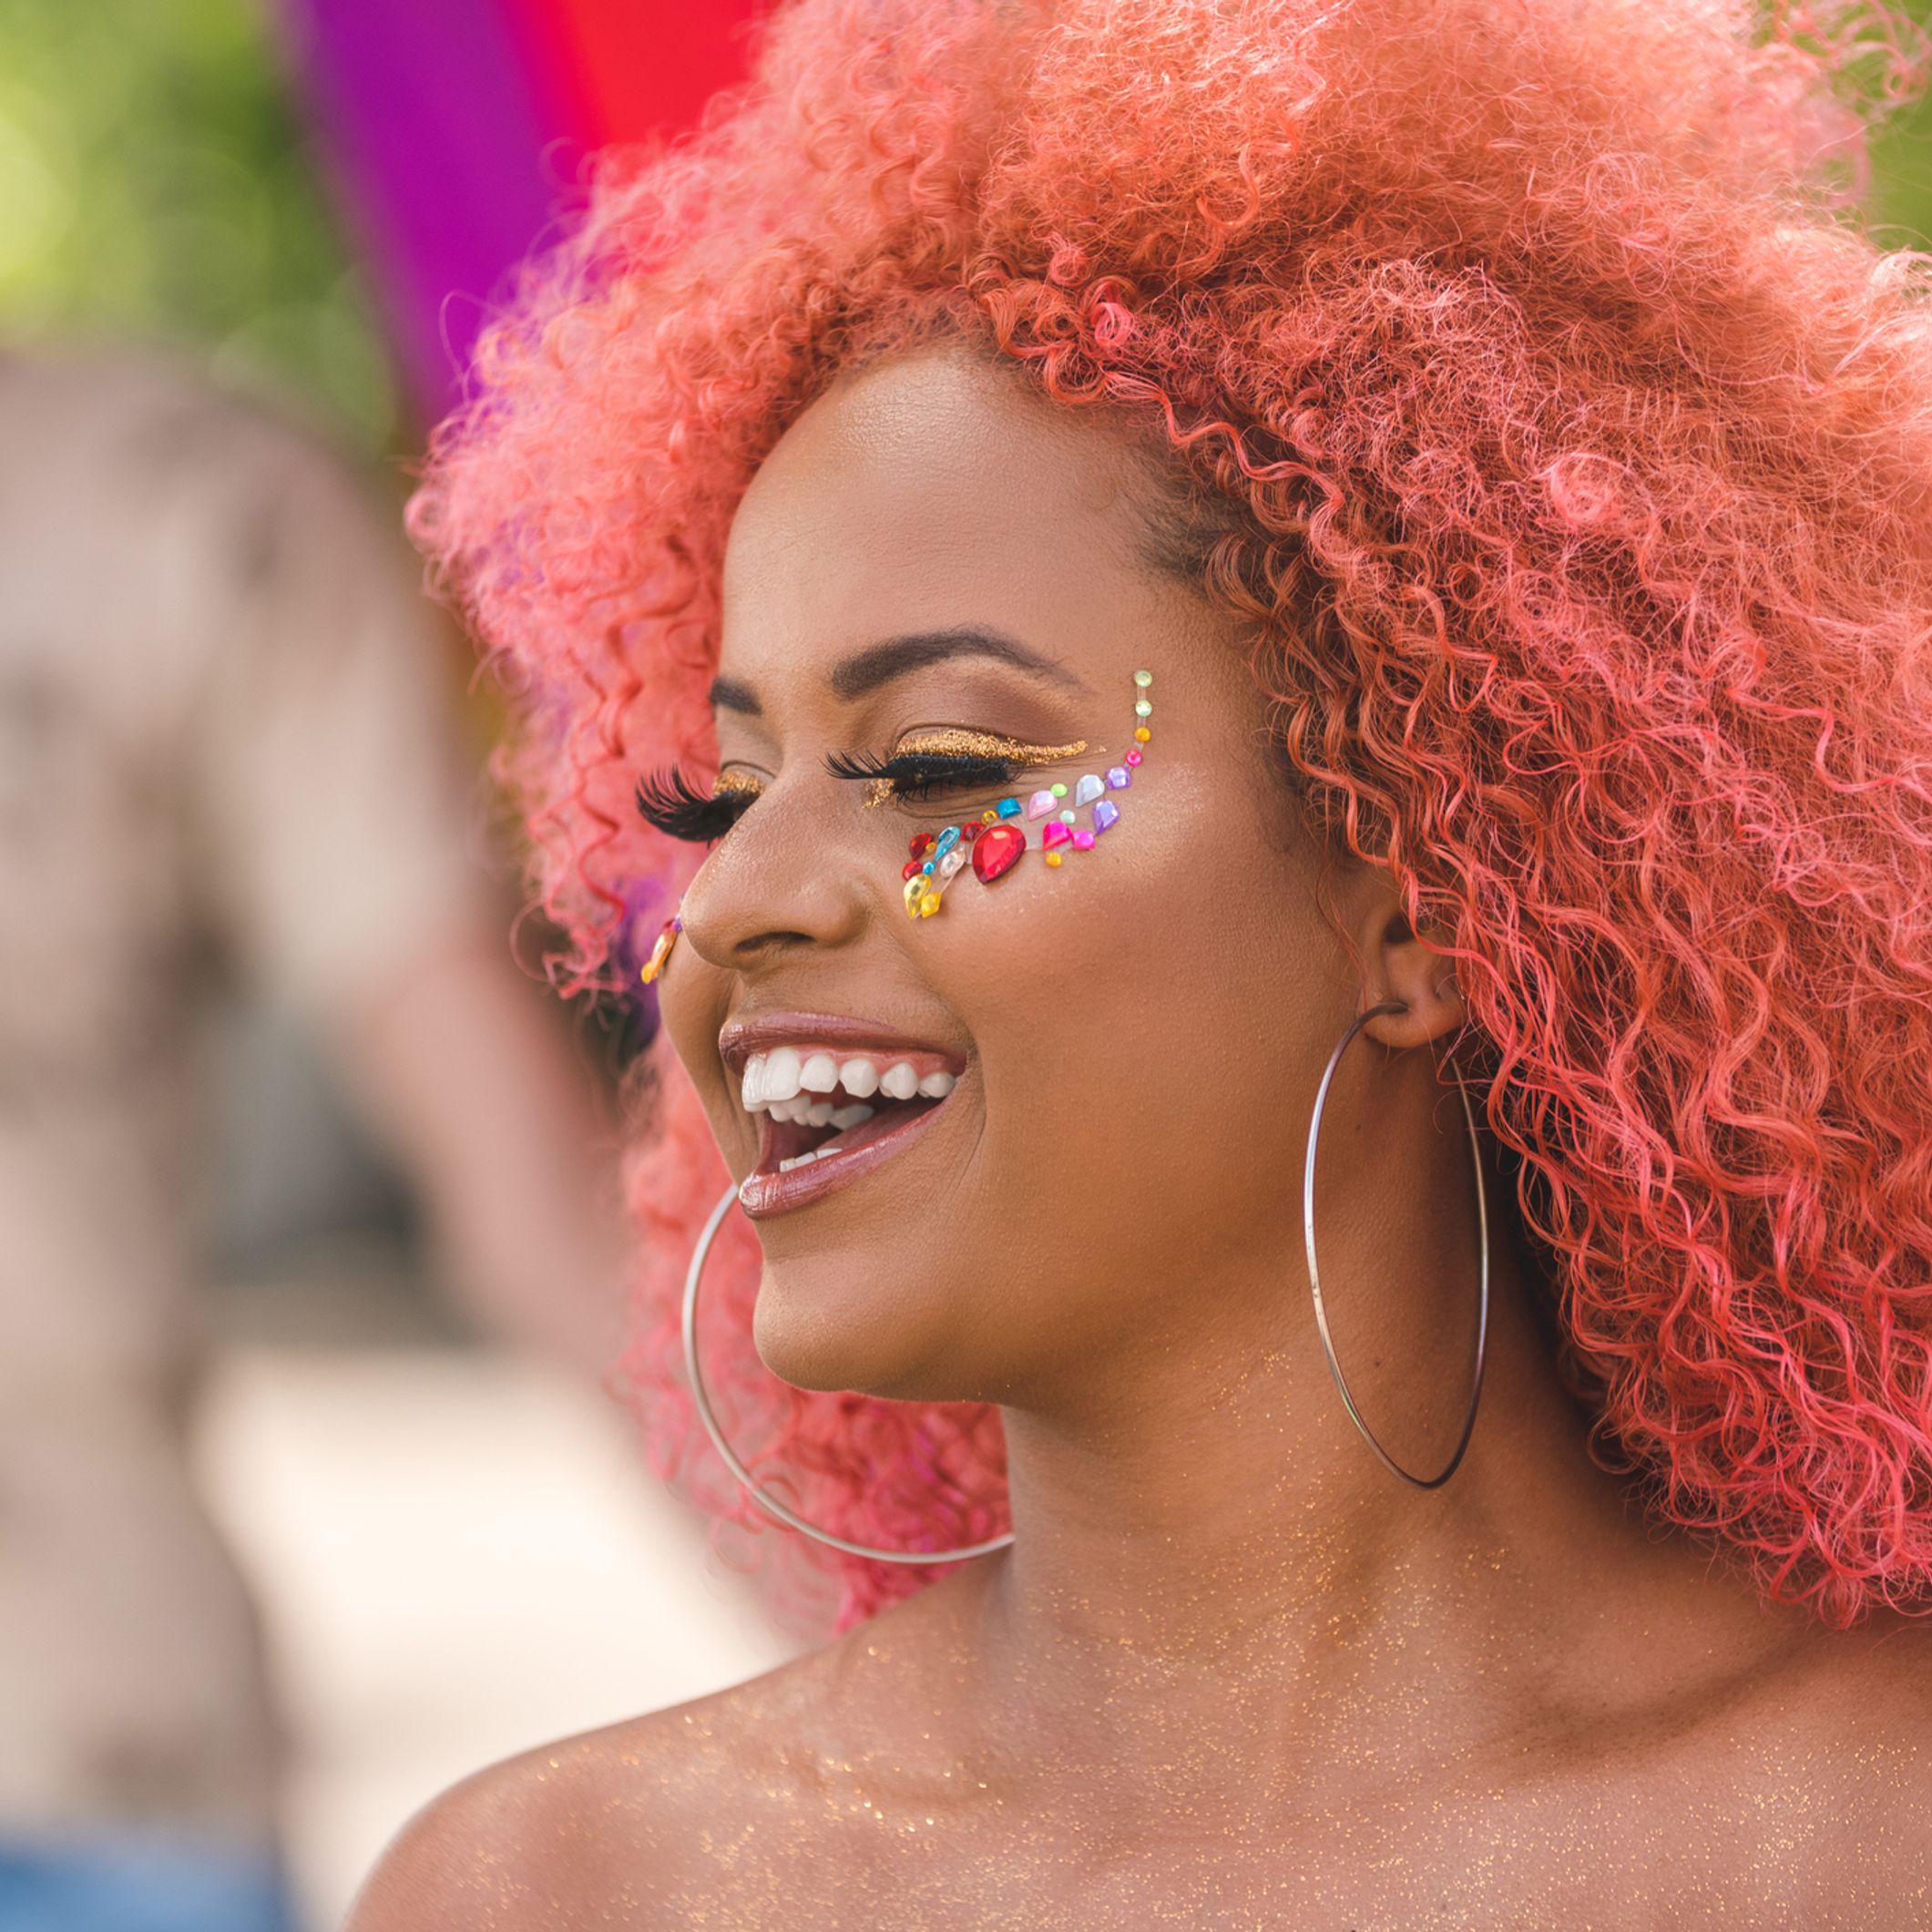 Practicar senderismo brindis metálico Disfraces divertidos y originales para triunfar en Carnaval 2020